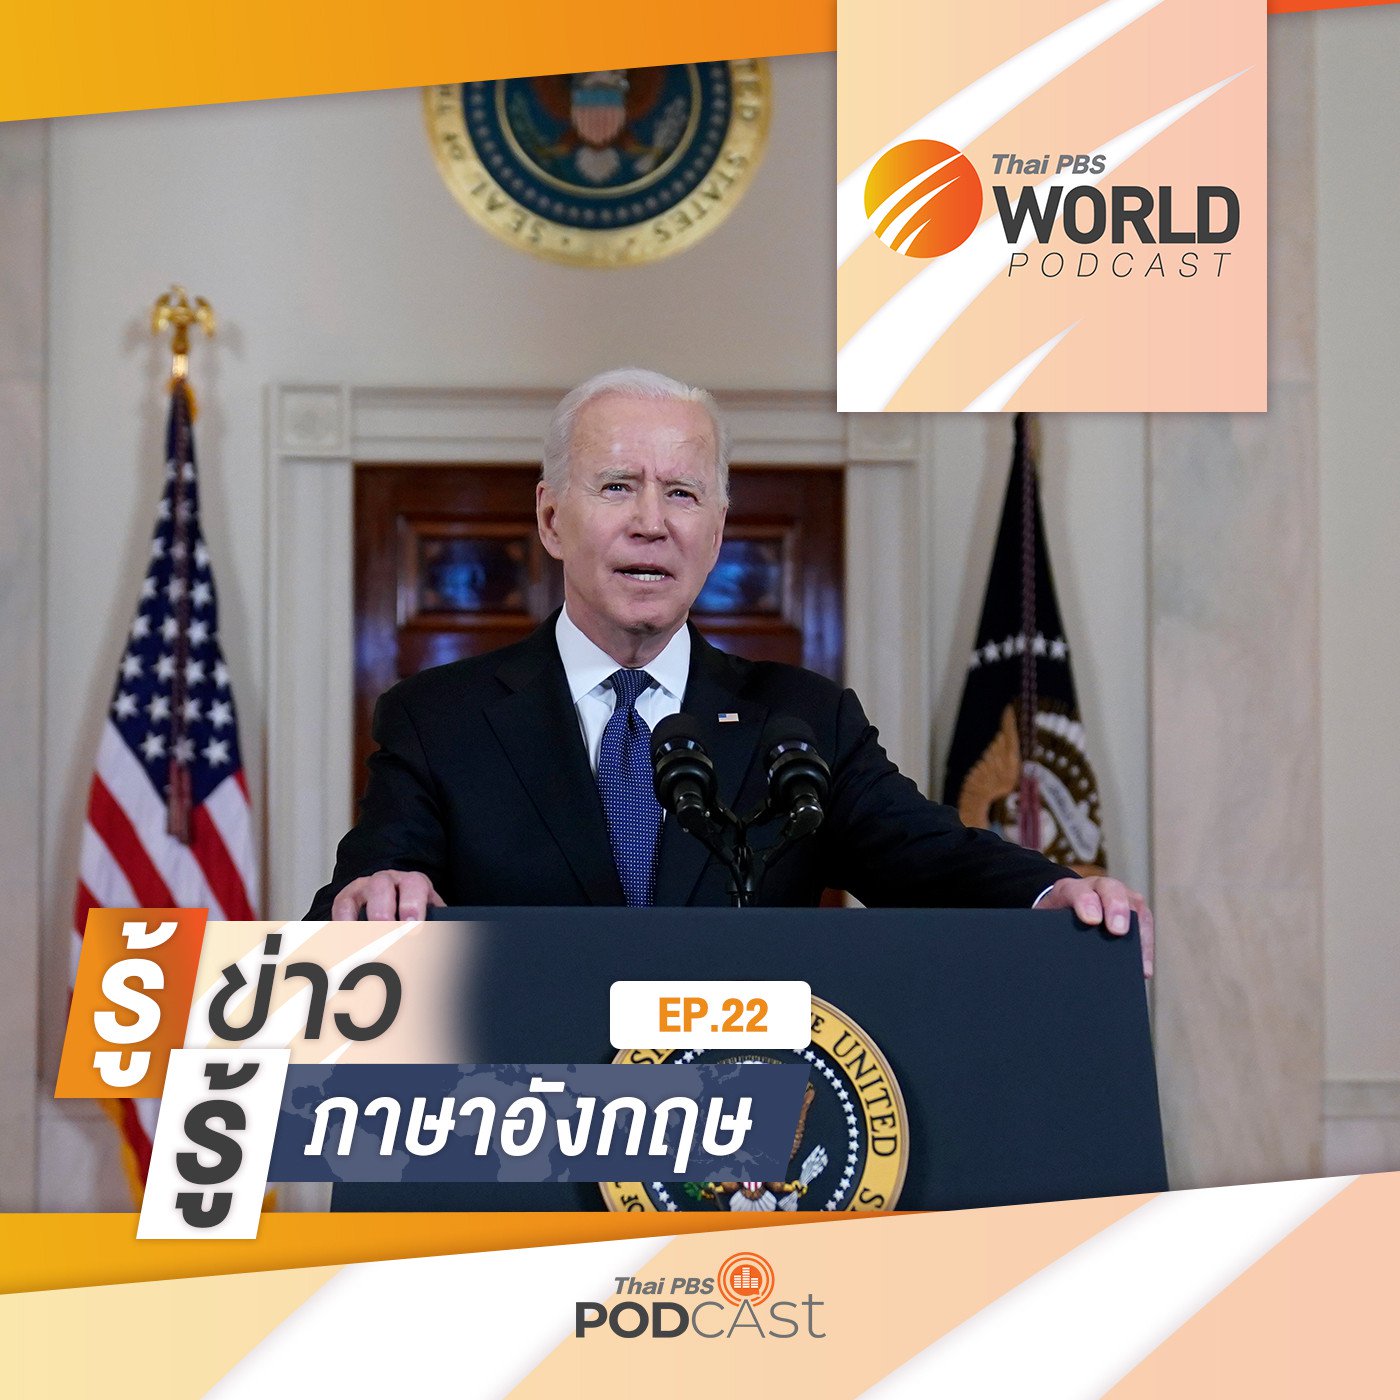 Thai PBS World Podcast - รู้ข่าว รู้ภาษาอังกฤษ EP. 22: รู้ข่าว รู้ภาษาอังกฤษ - ”ไบเดน” สั่ง�